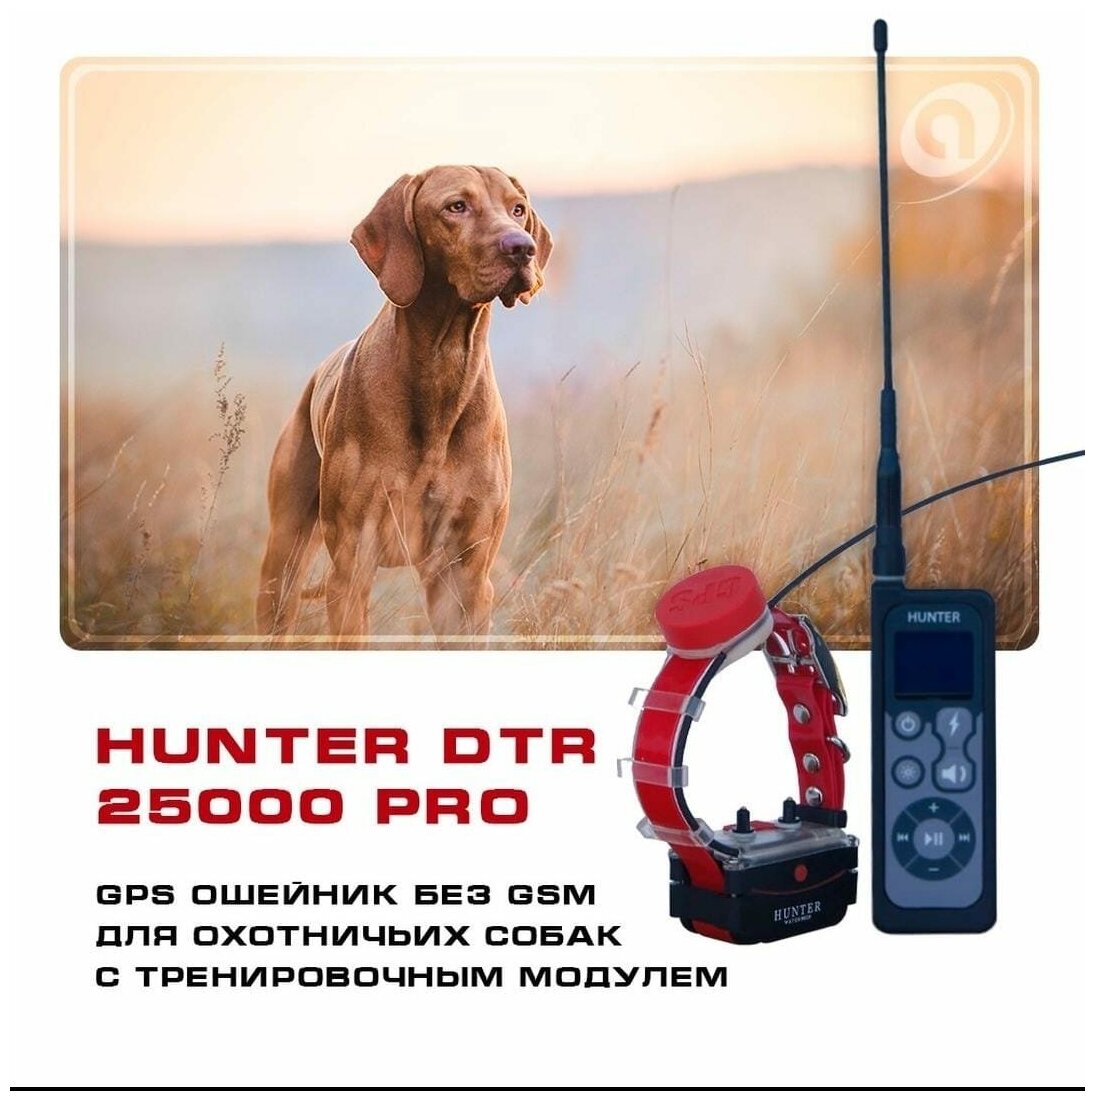 GPS ошейник для охоты Hunter DTR 25000 PRO с импульсом